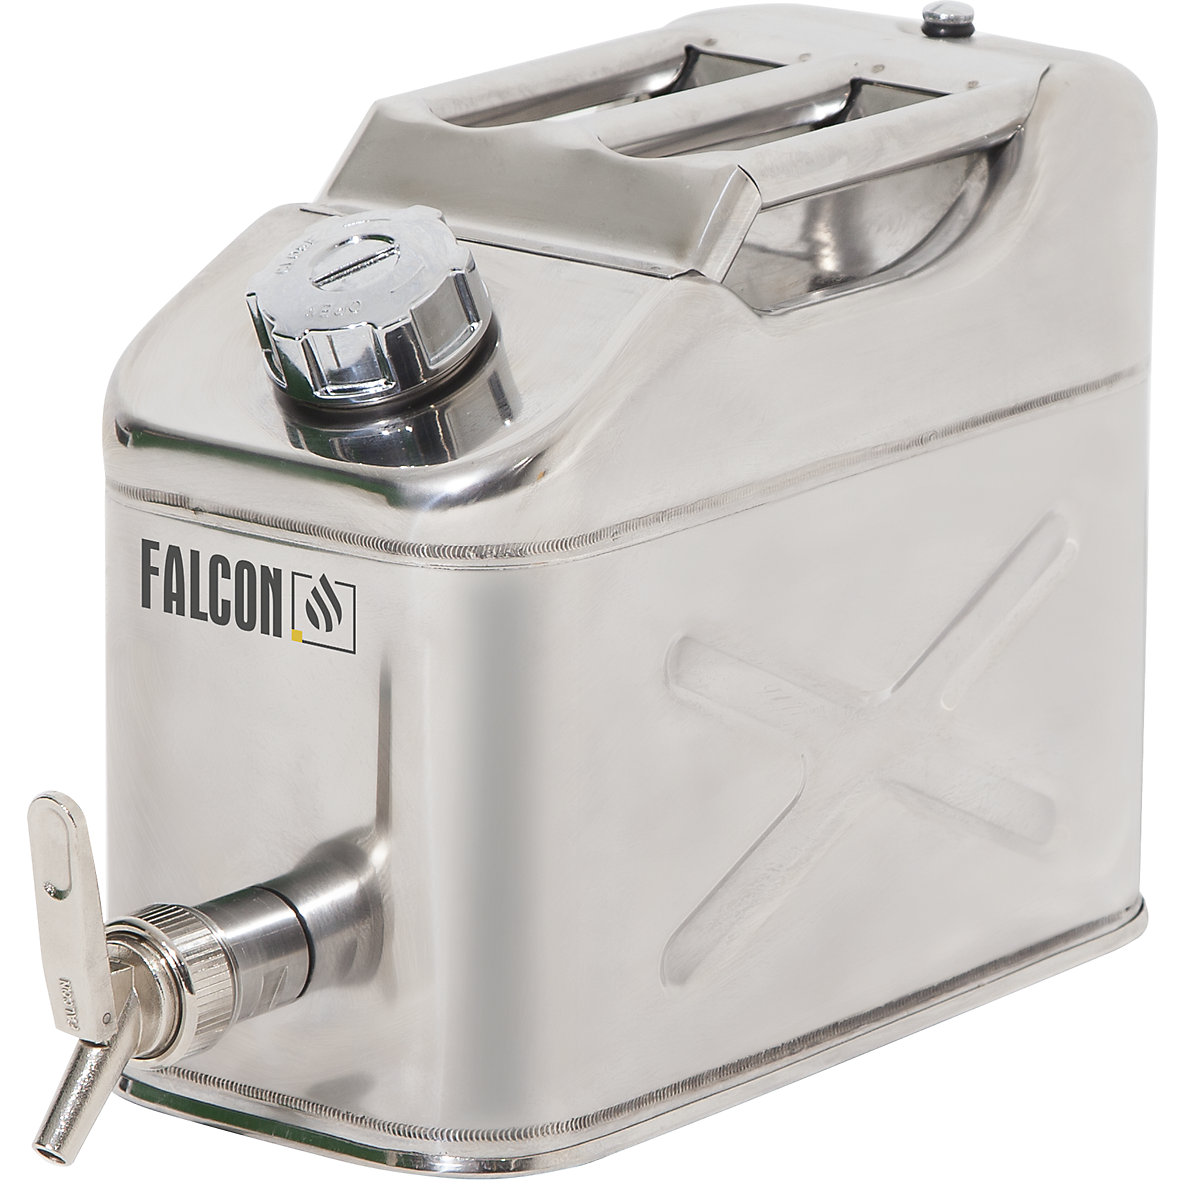 Canistră de siguranță cu robinet pentru dozare fină – FALCON